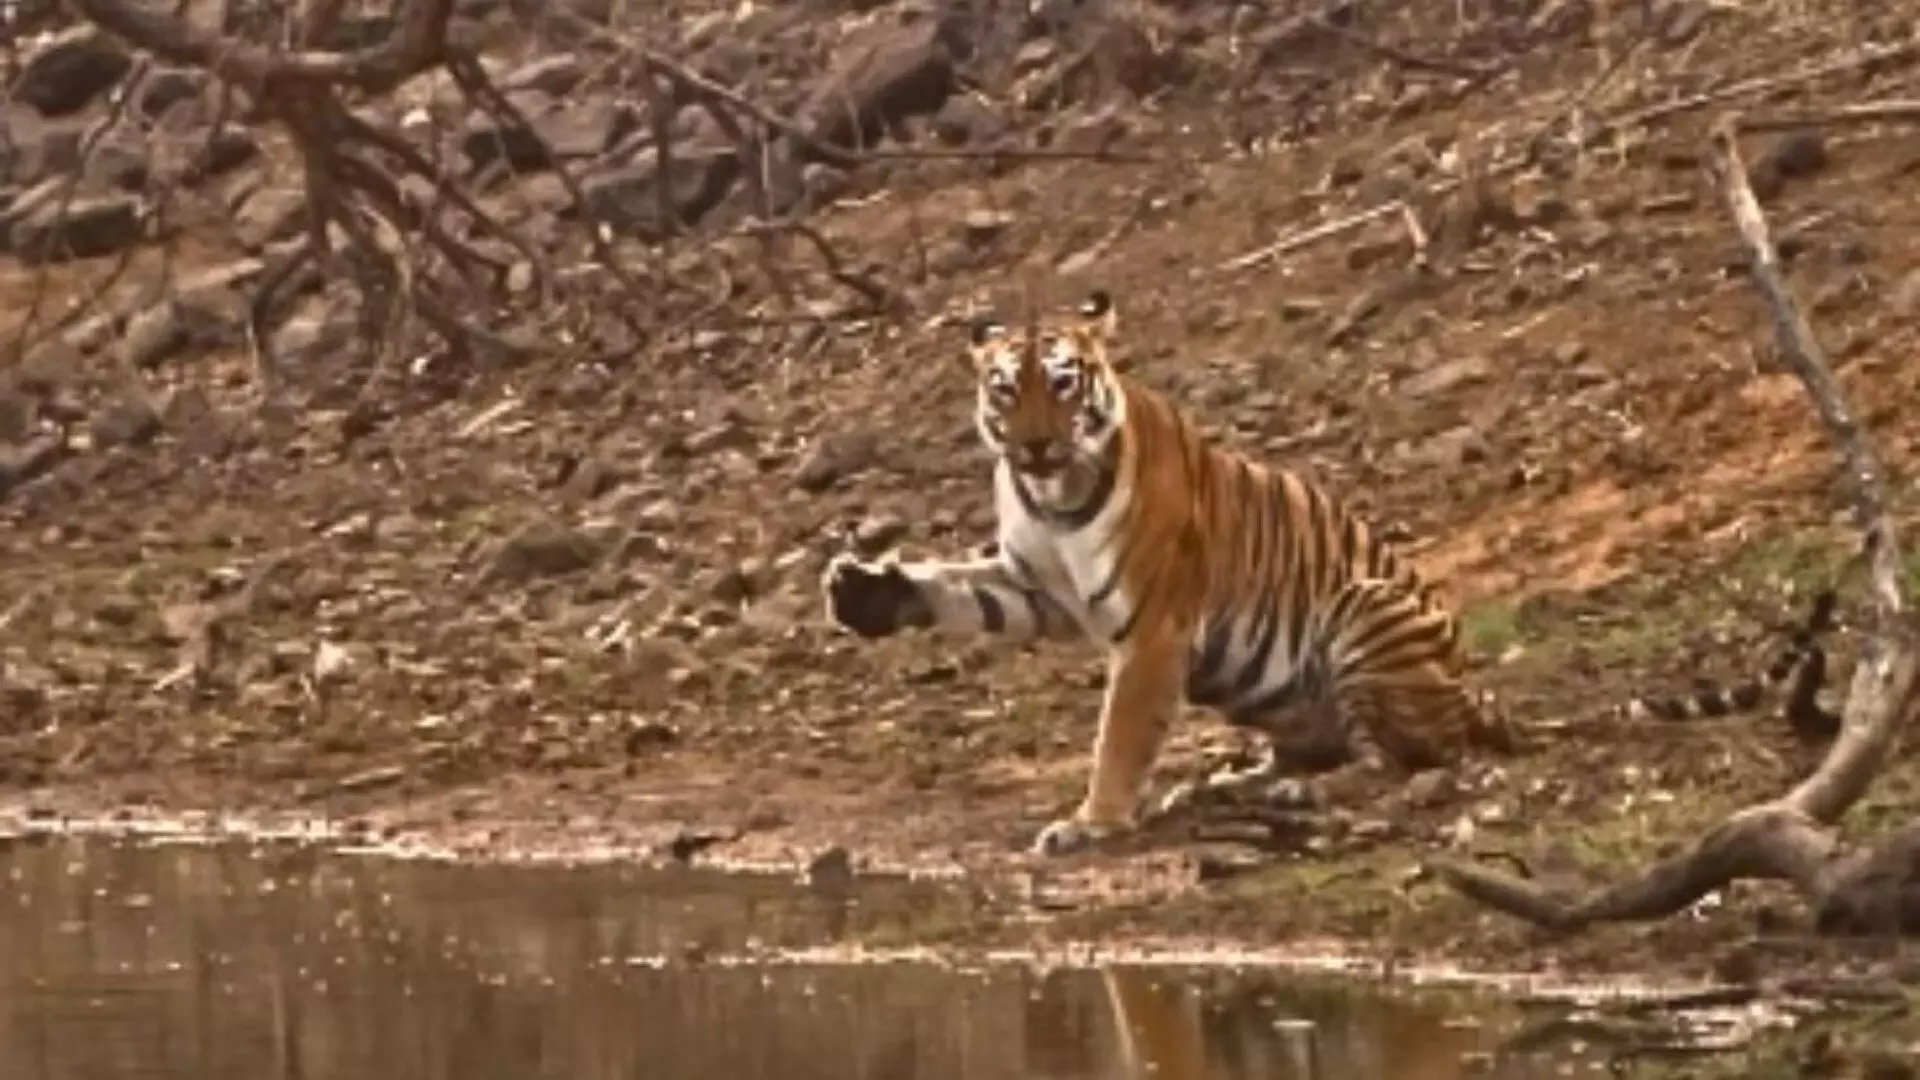 Camera को देखकर हाय करता दिखा बाघ, देखें VIDEO...